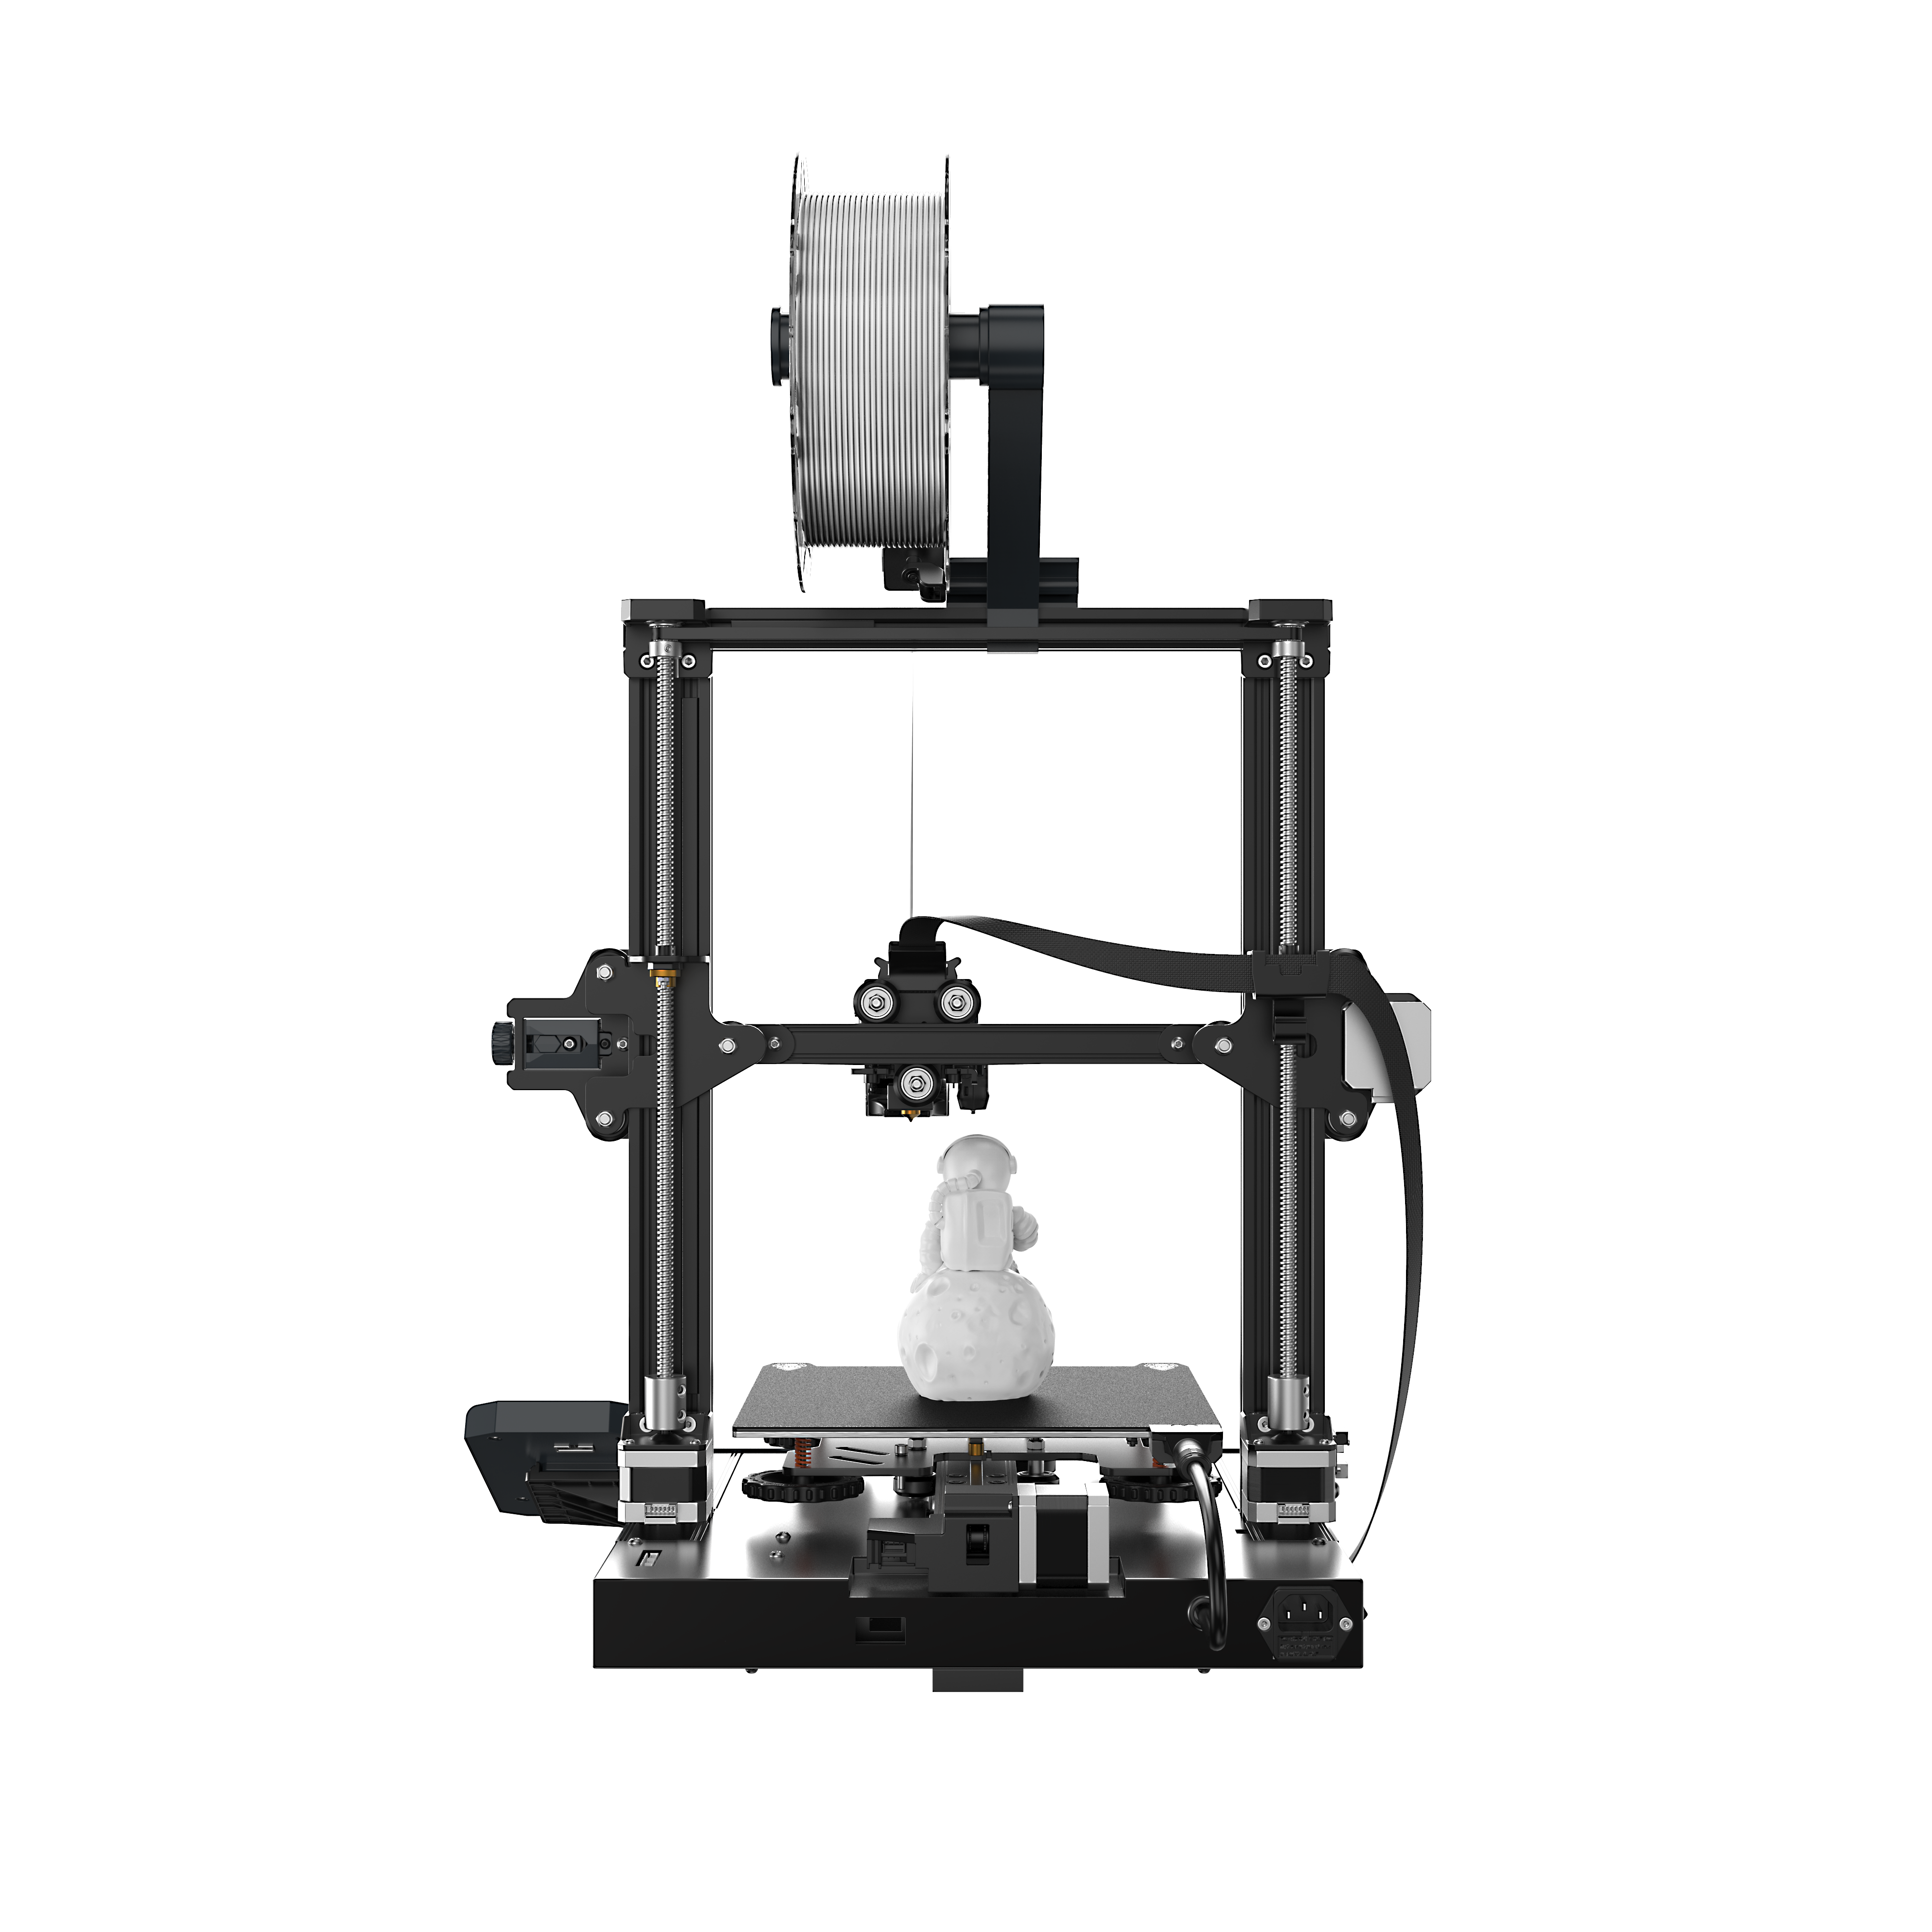 Impresora 3D FDM de alta calidad